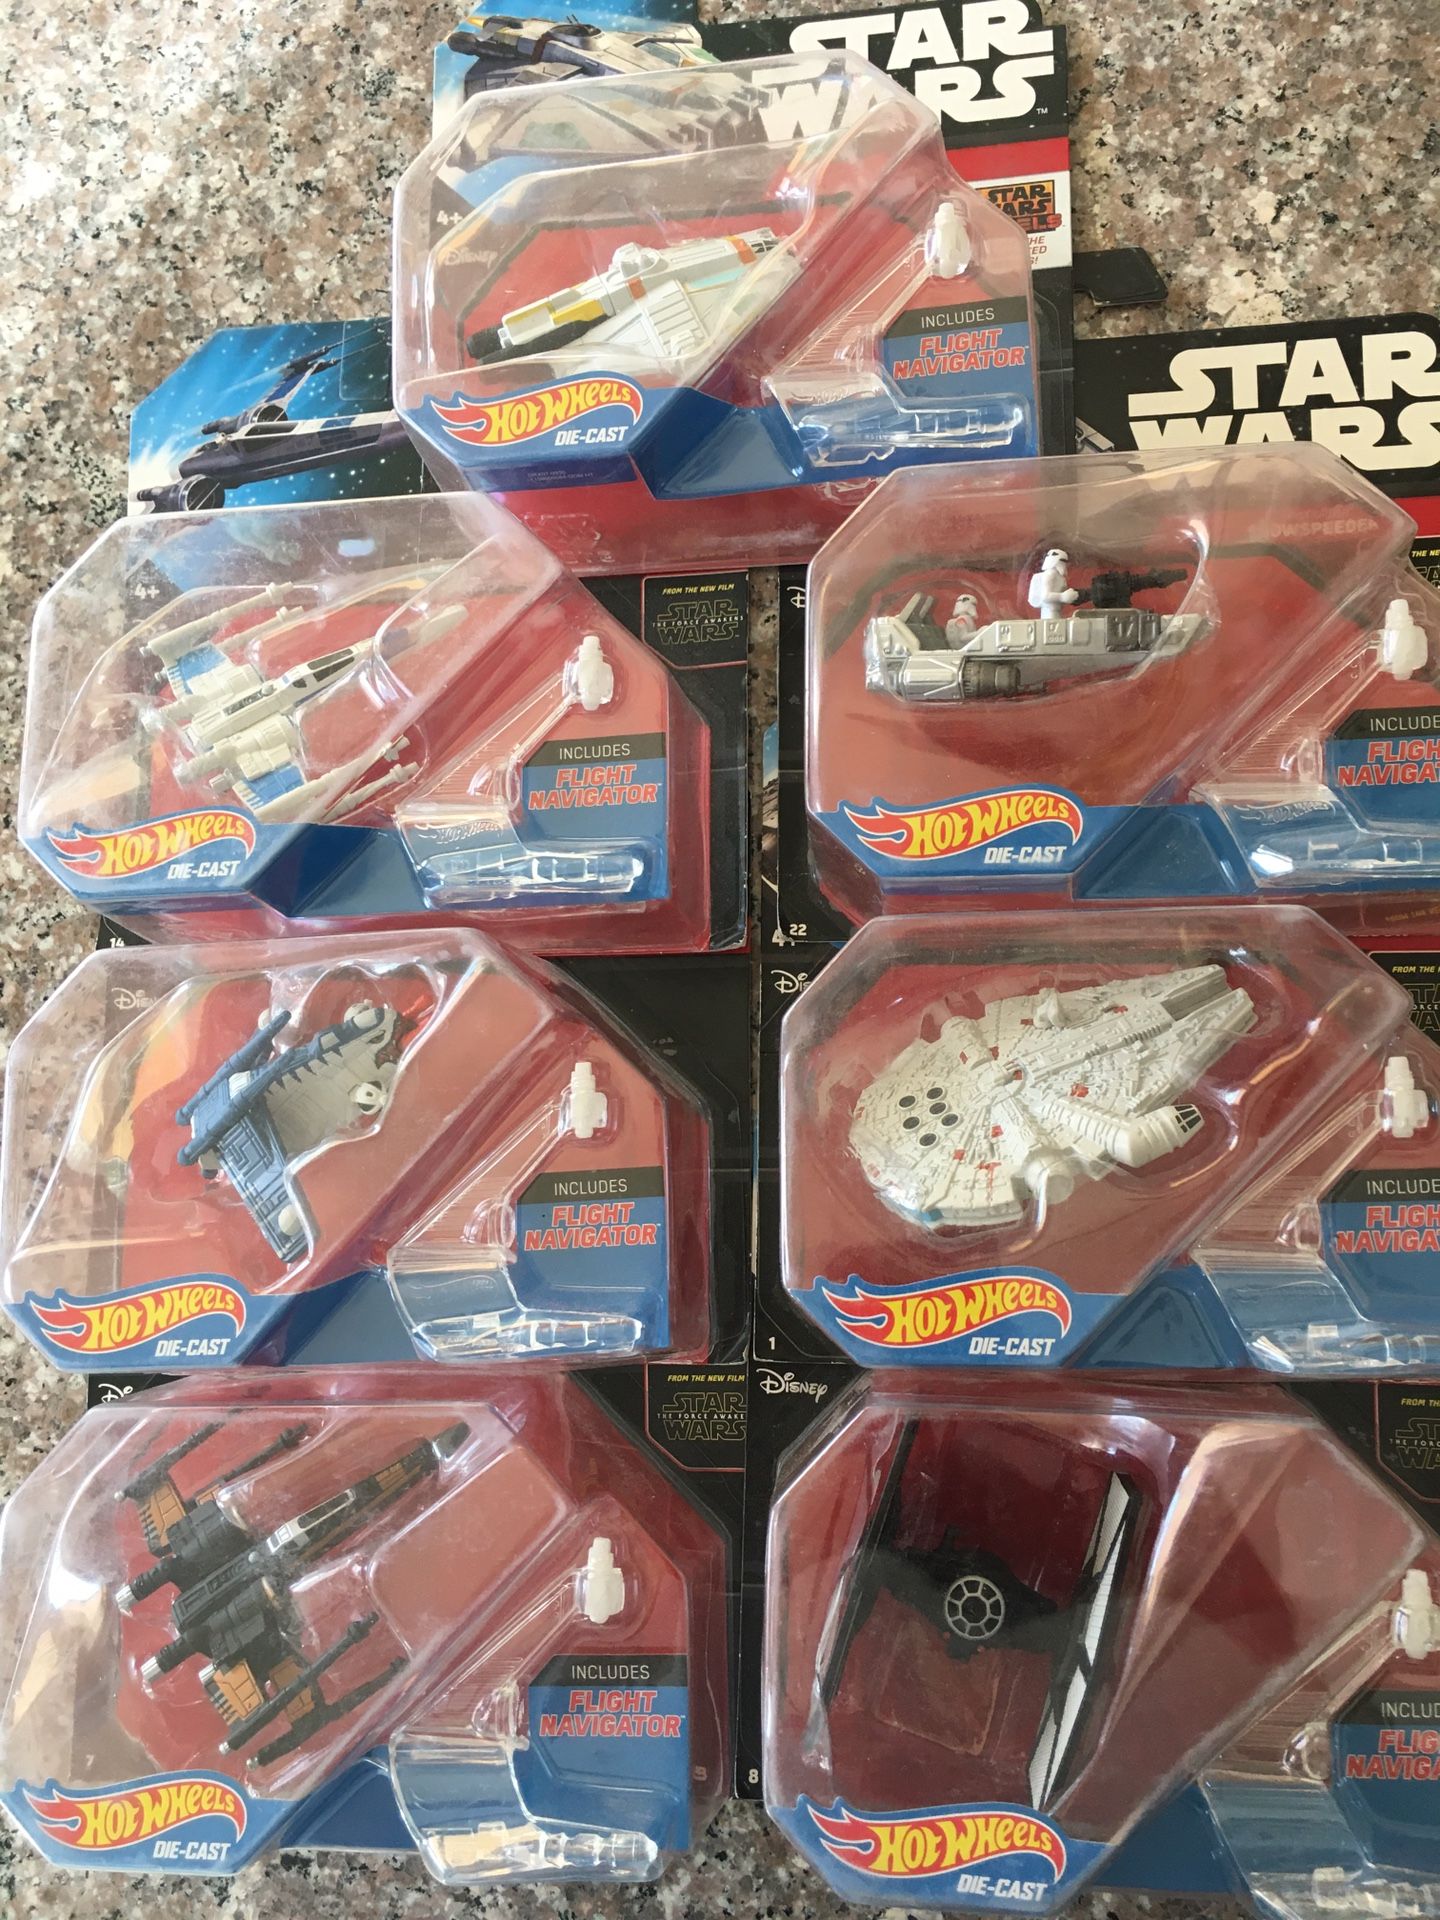 Star Wars hot wheels Disney diecast collectible